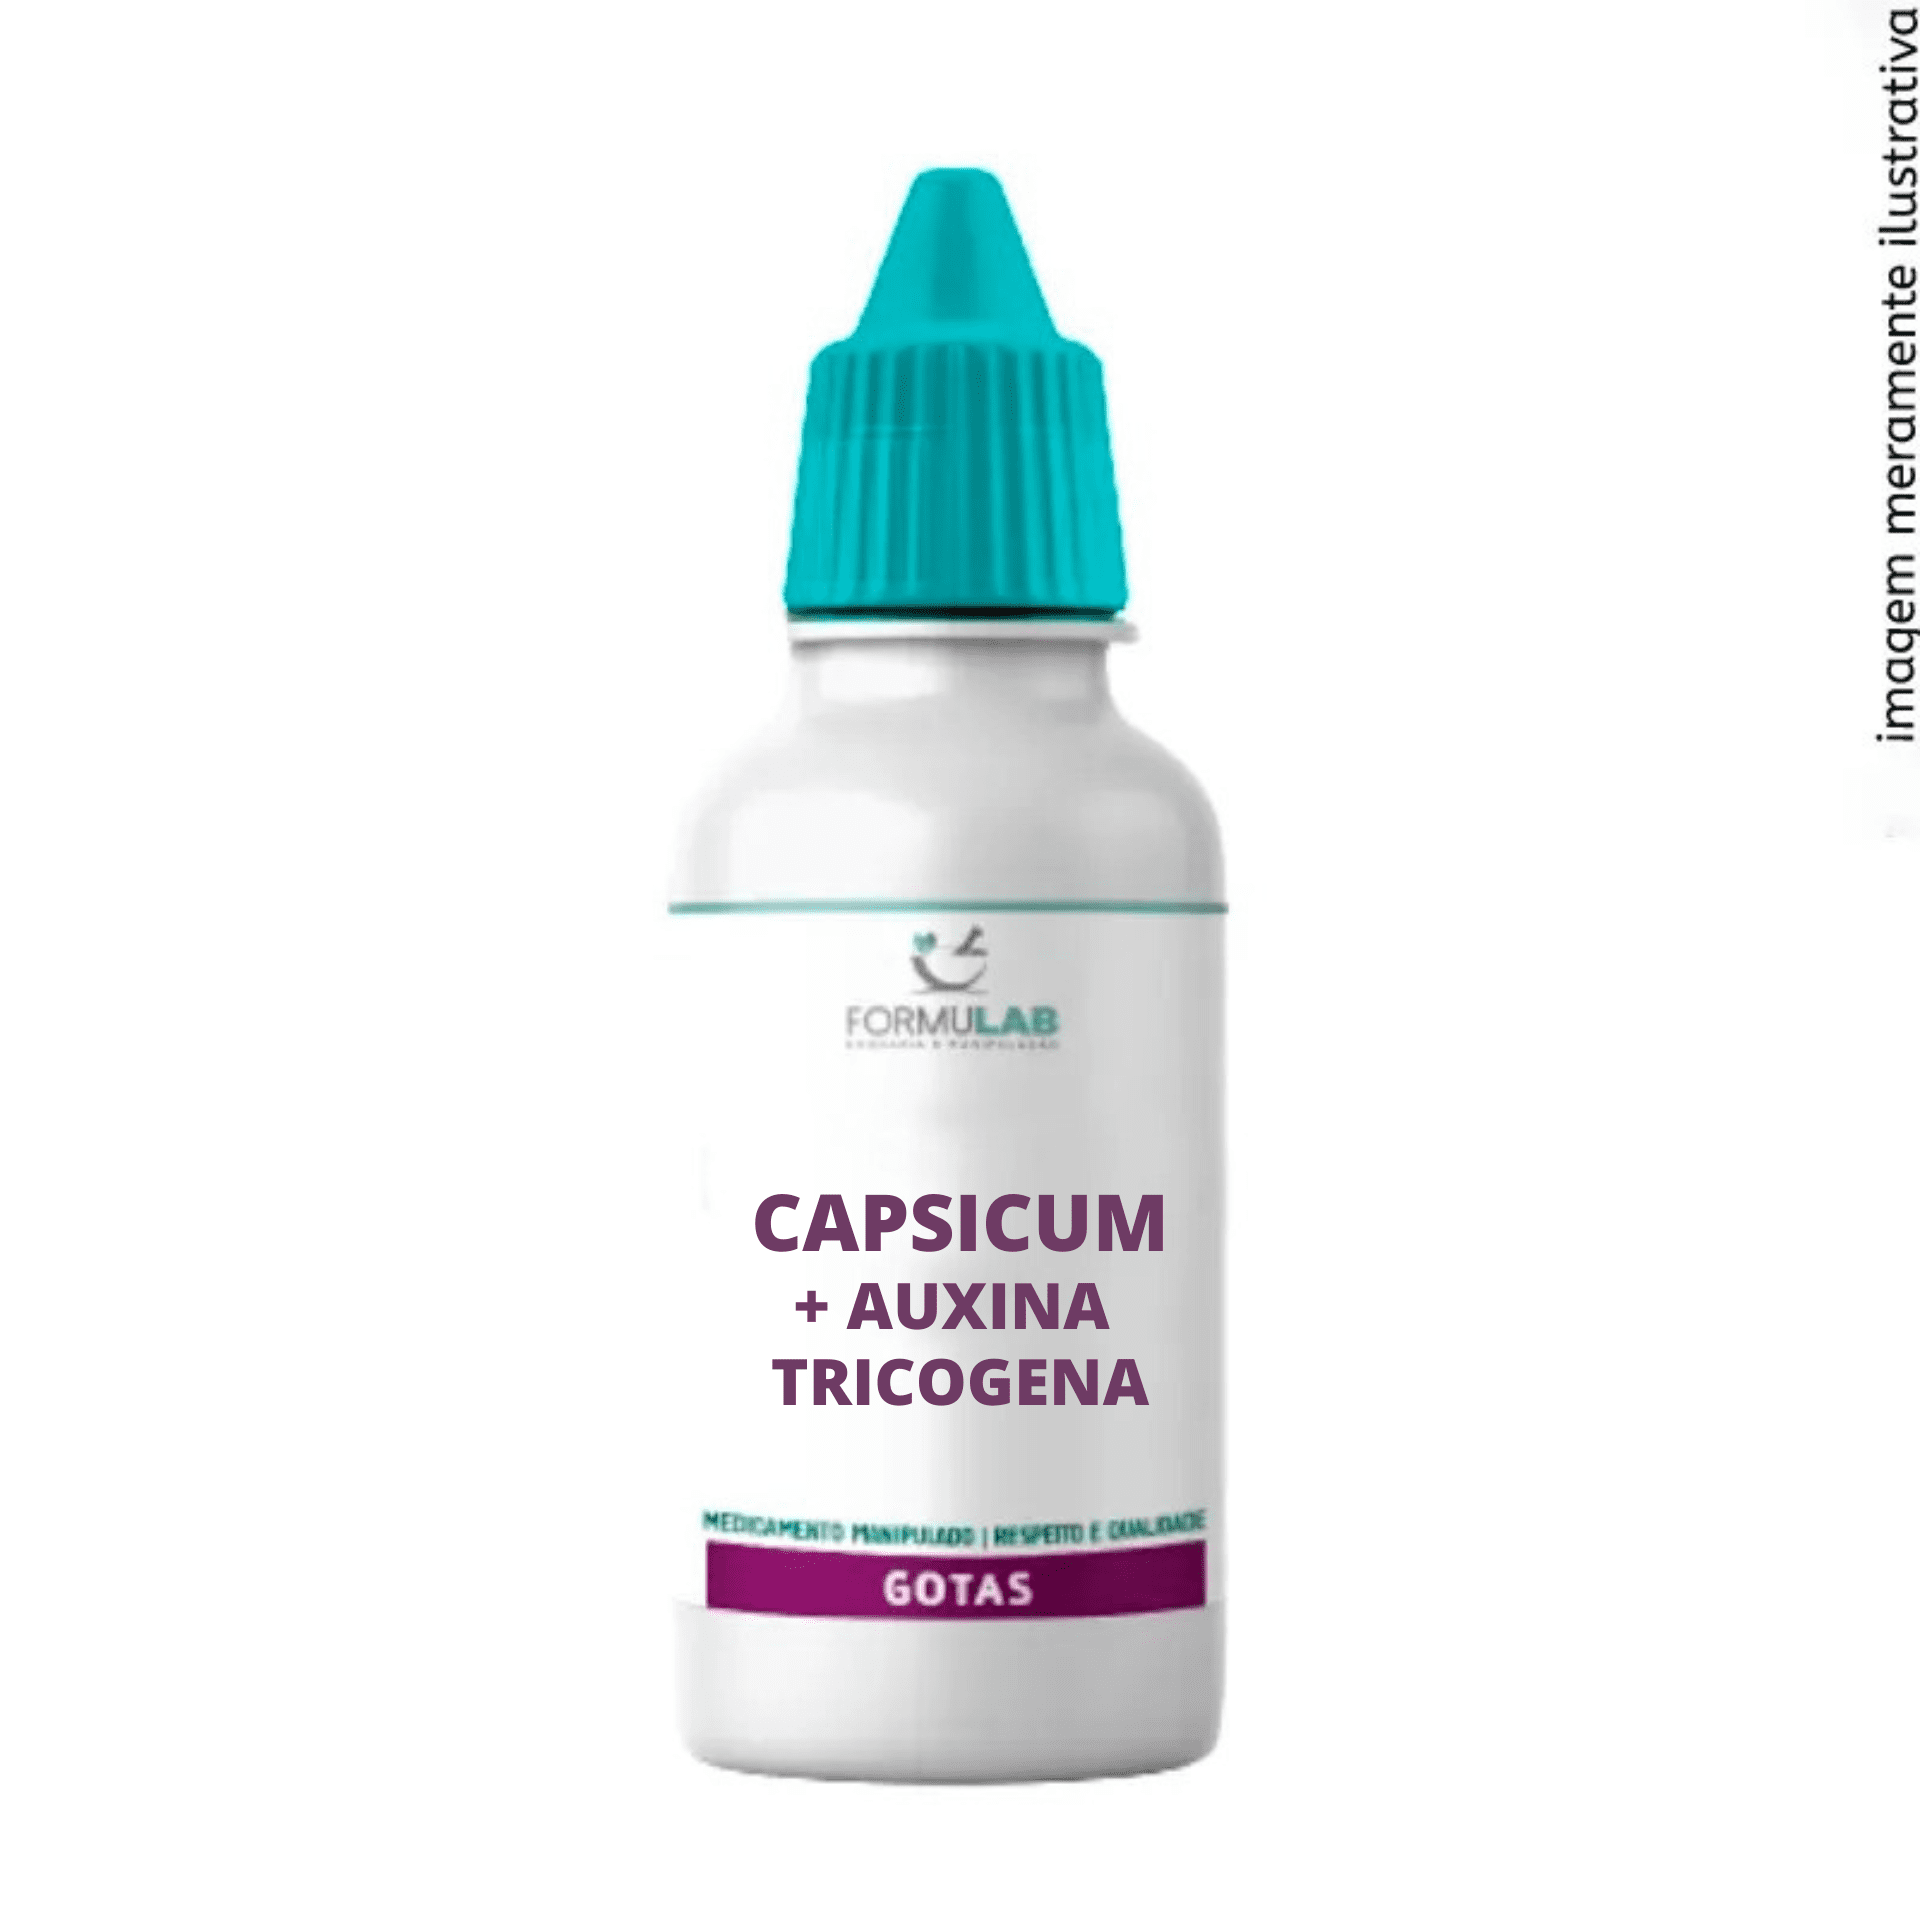 Extrato Glicólico de Capsicum 10% + Auxina Tricogena 10% - Loção Capilar 100ml